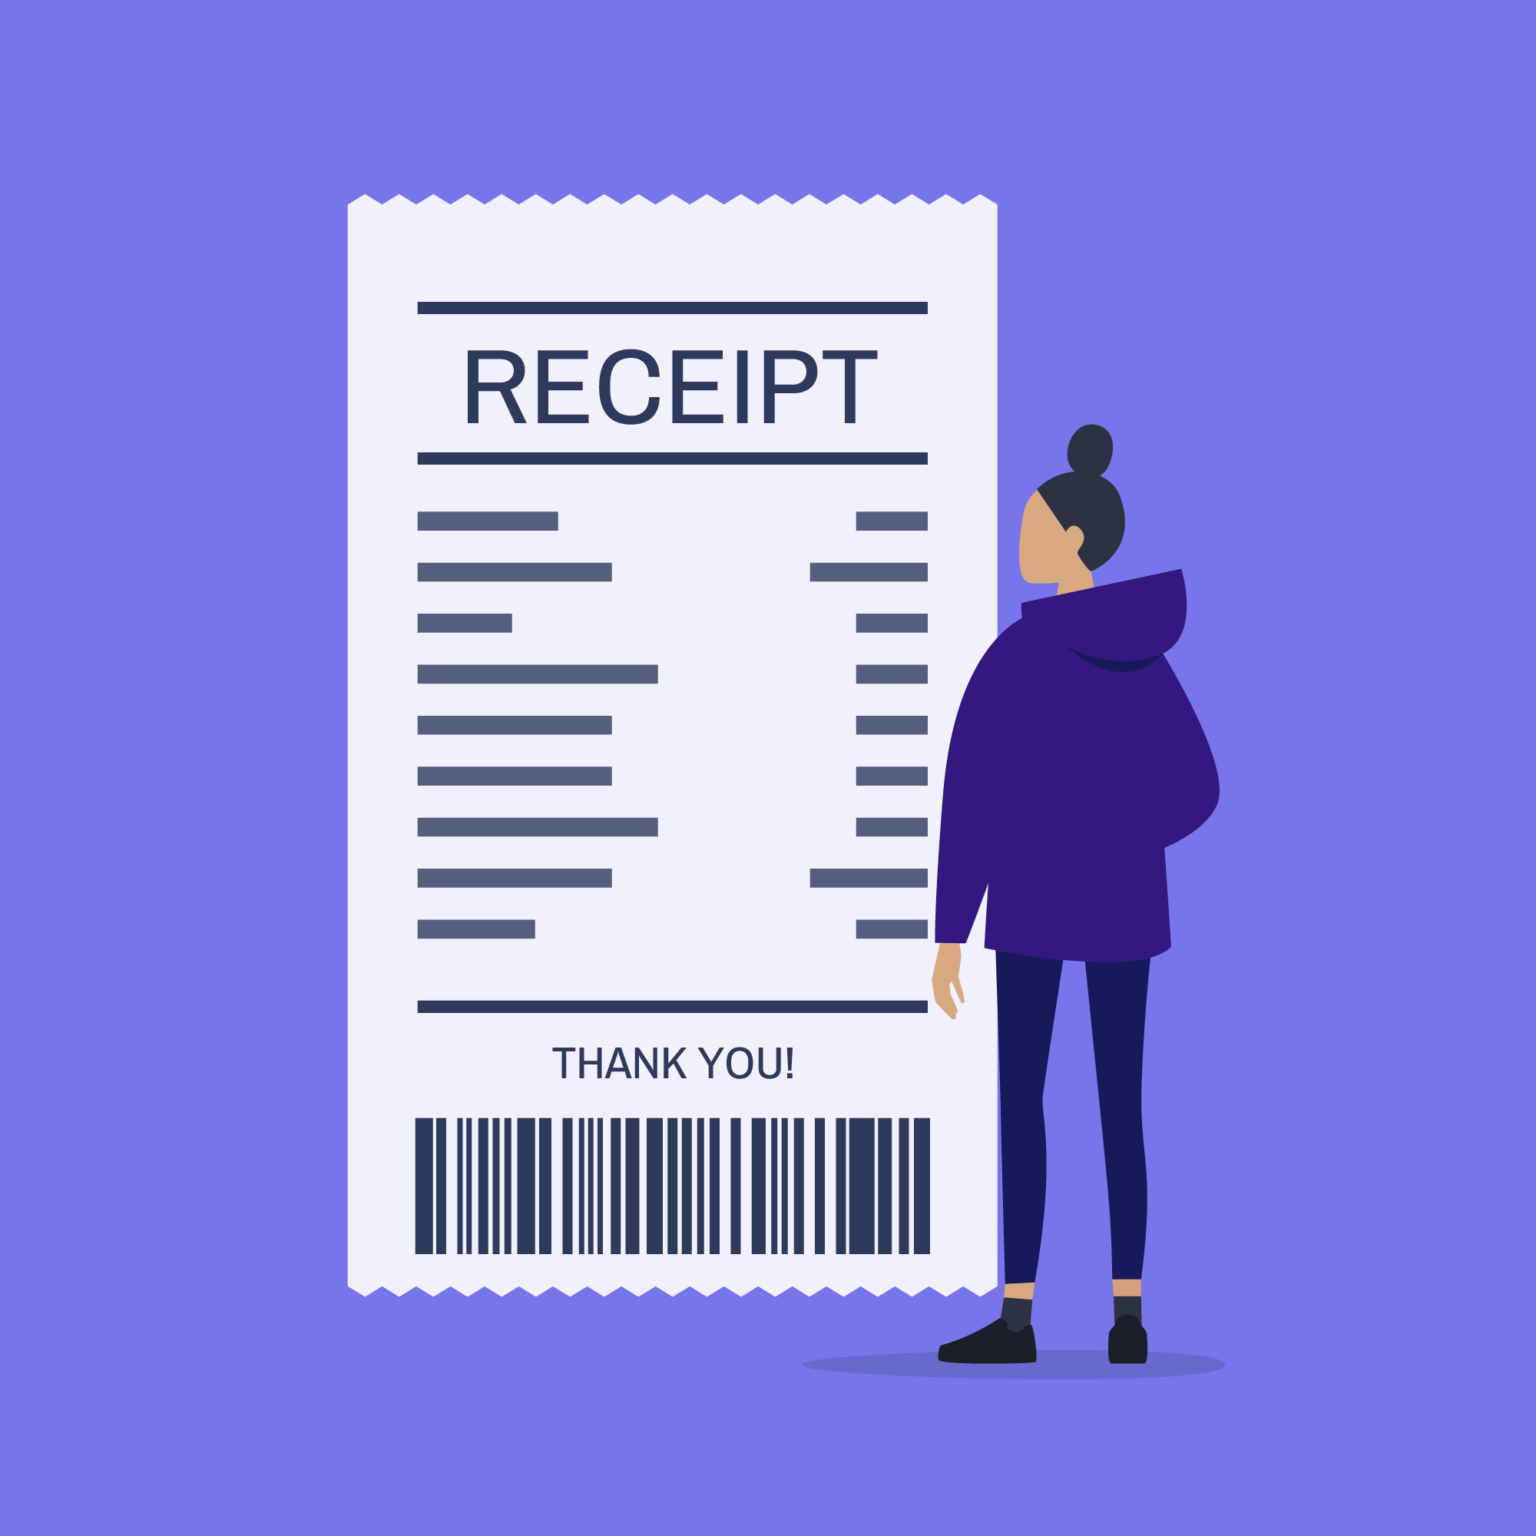 expressexpense-custom-receipt-maker-online-receipt-template-tool